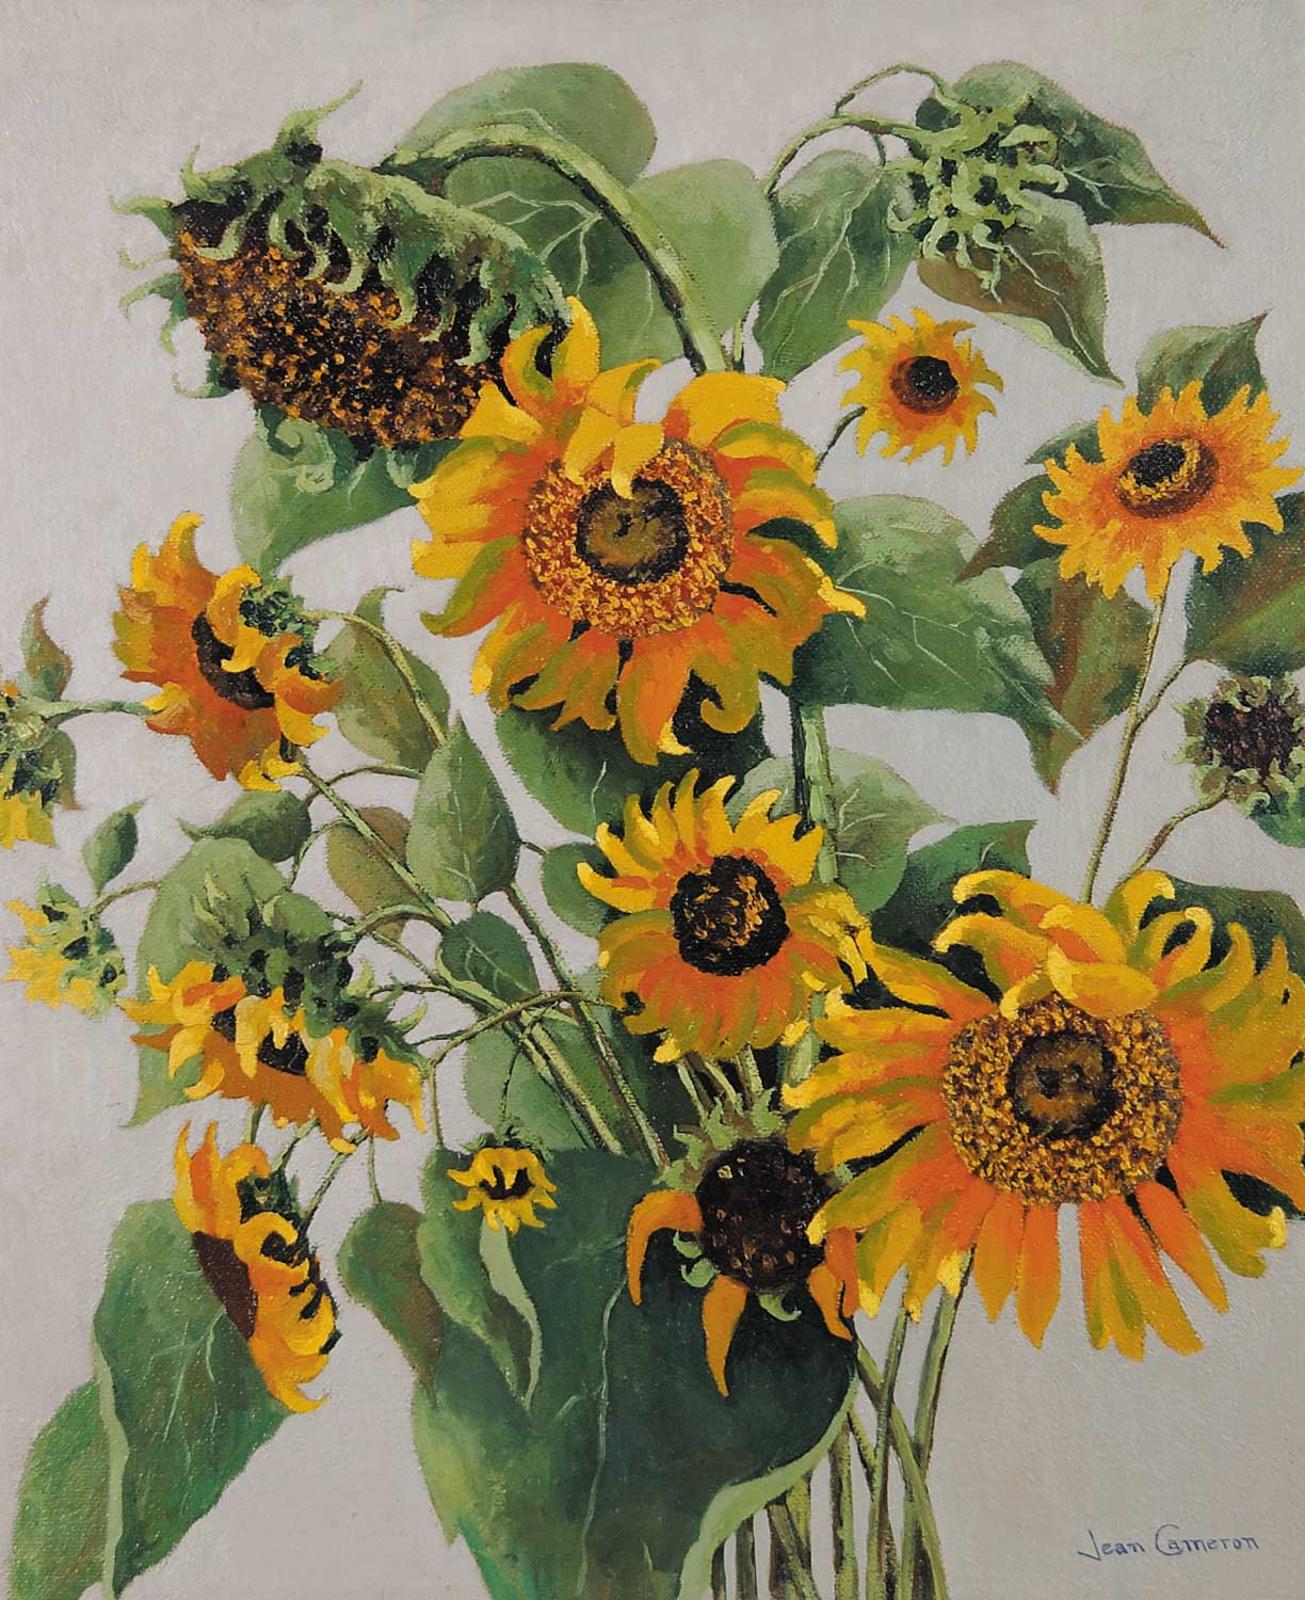 Jean Park Cameron (1905) - Sunflowers